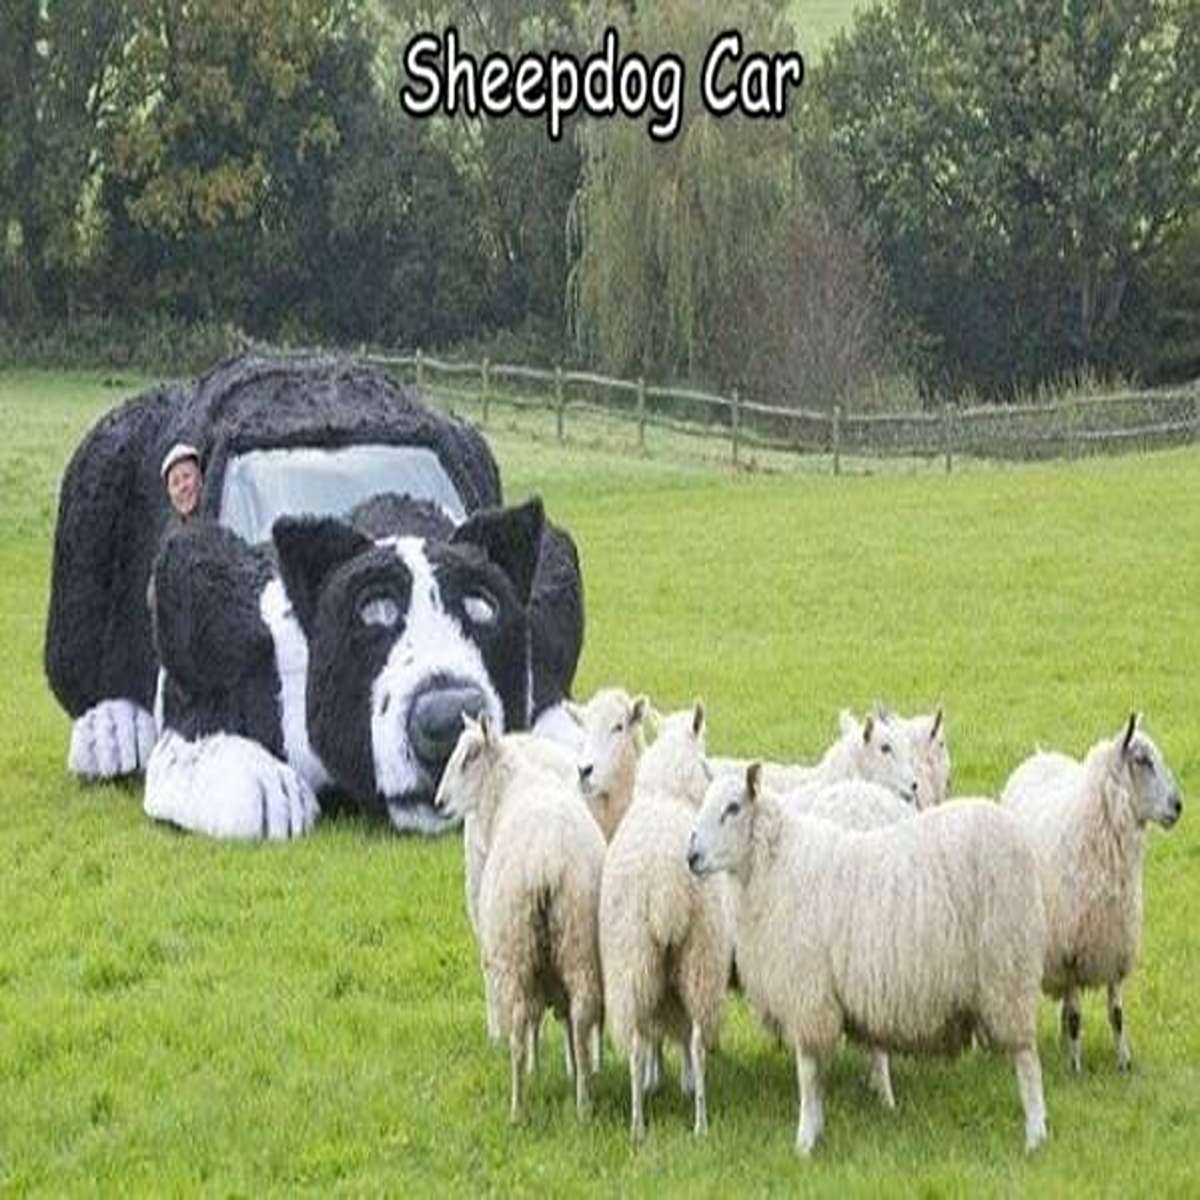 dank memes - sheep - Sheepdog Car